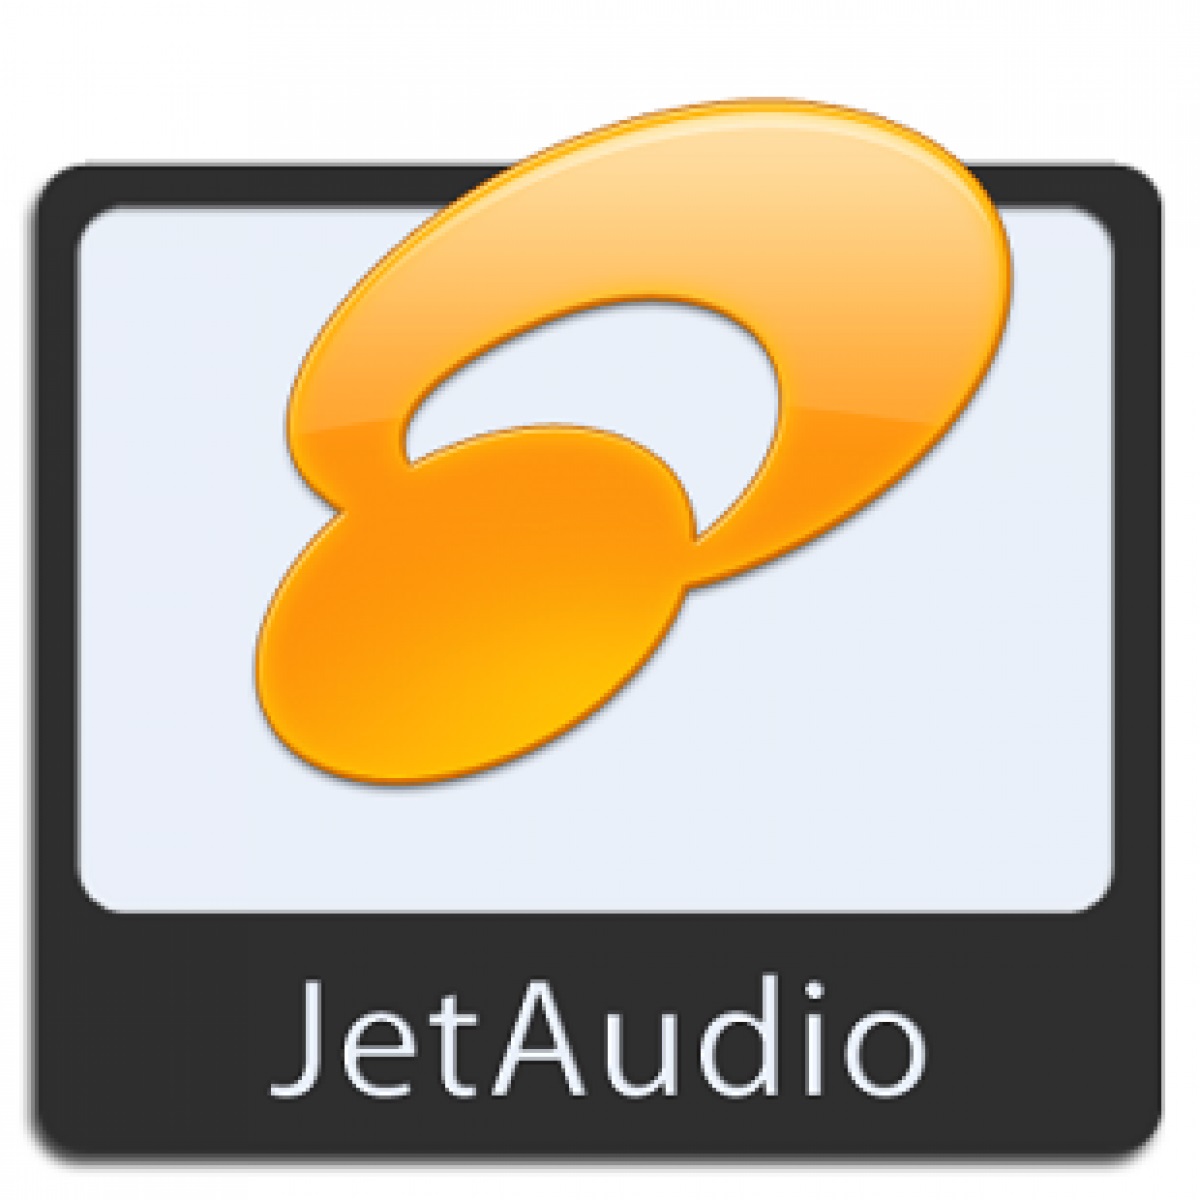 Tải Phần Mềm Jetaudio 8.1.8 - Link Full Hướng Dẫn Cài Đặt Chi Tiết - Phanmemantoan.net - Download An Toàn